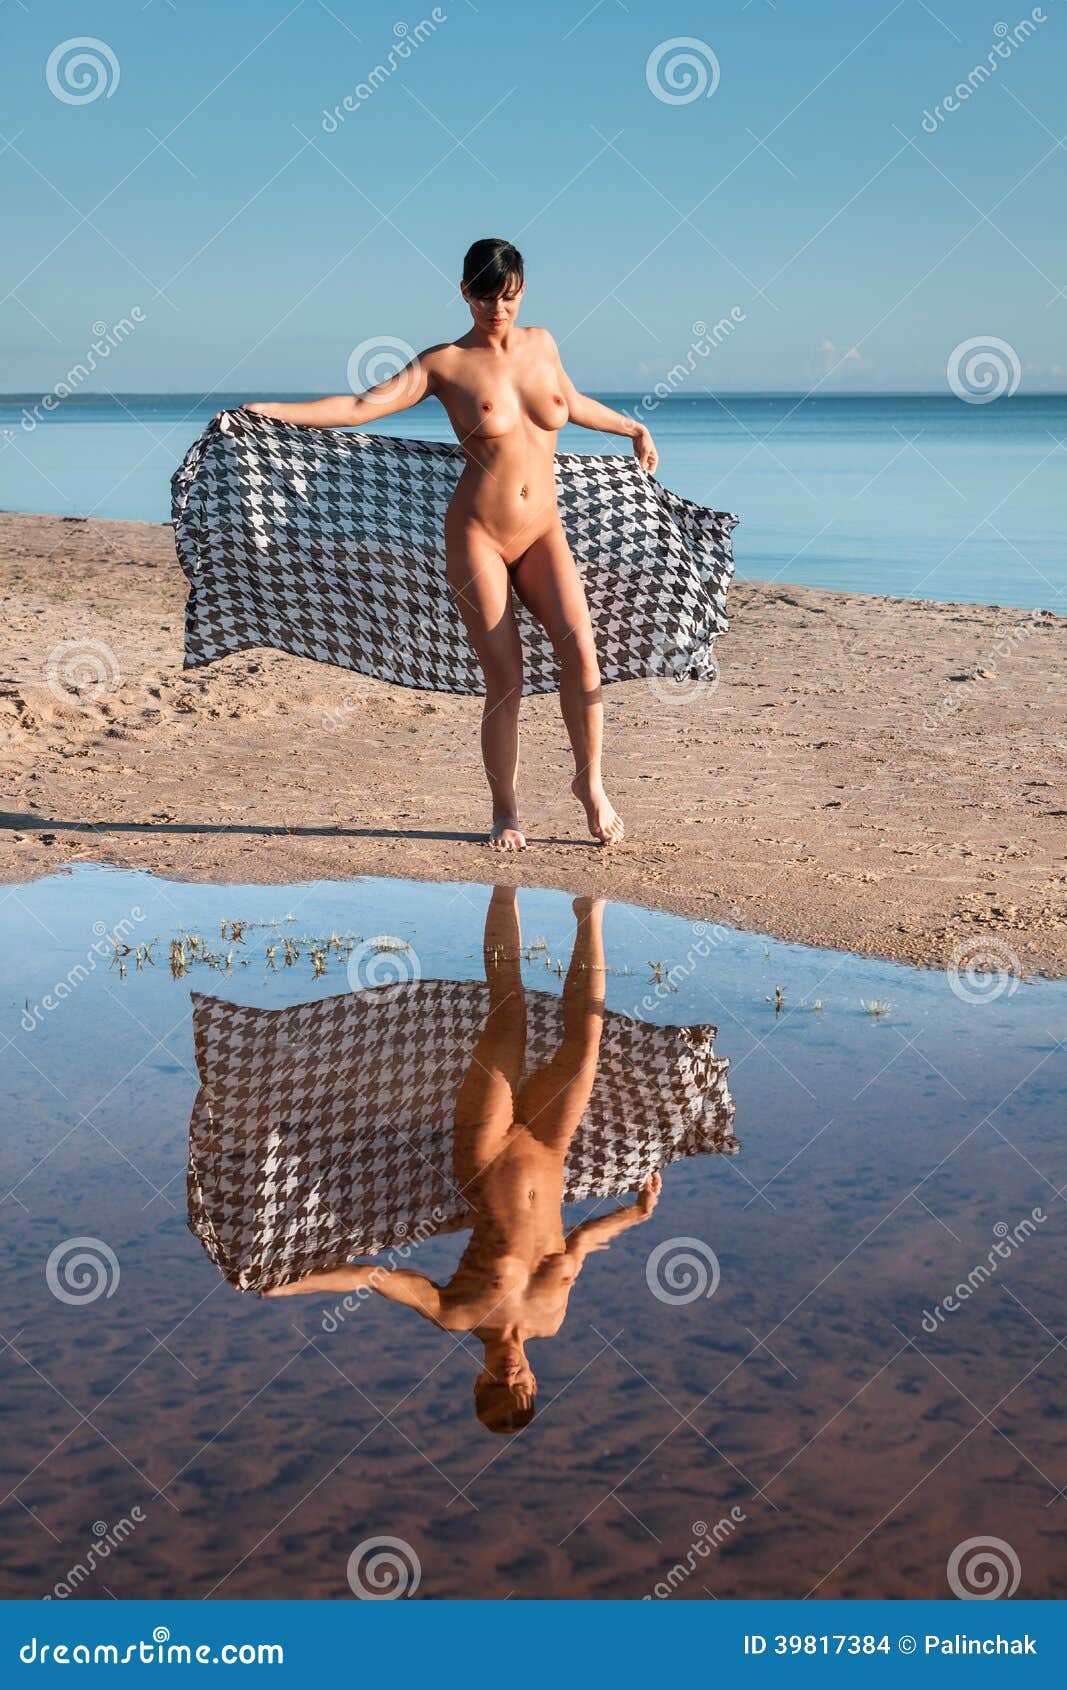 Playa con mujeres desnudas